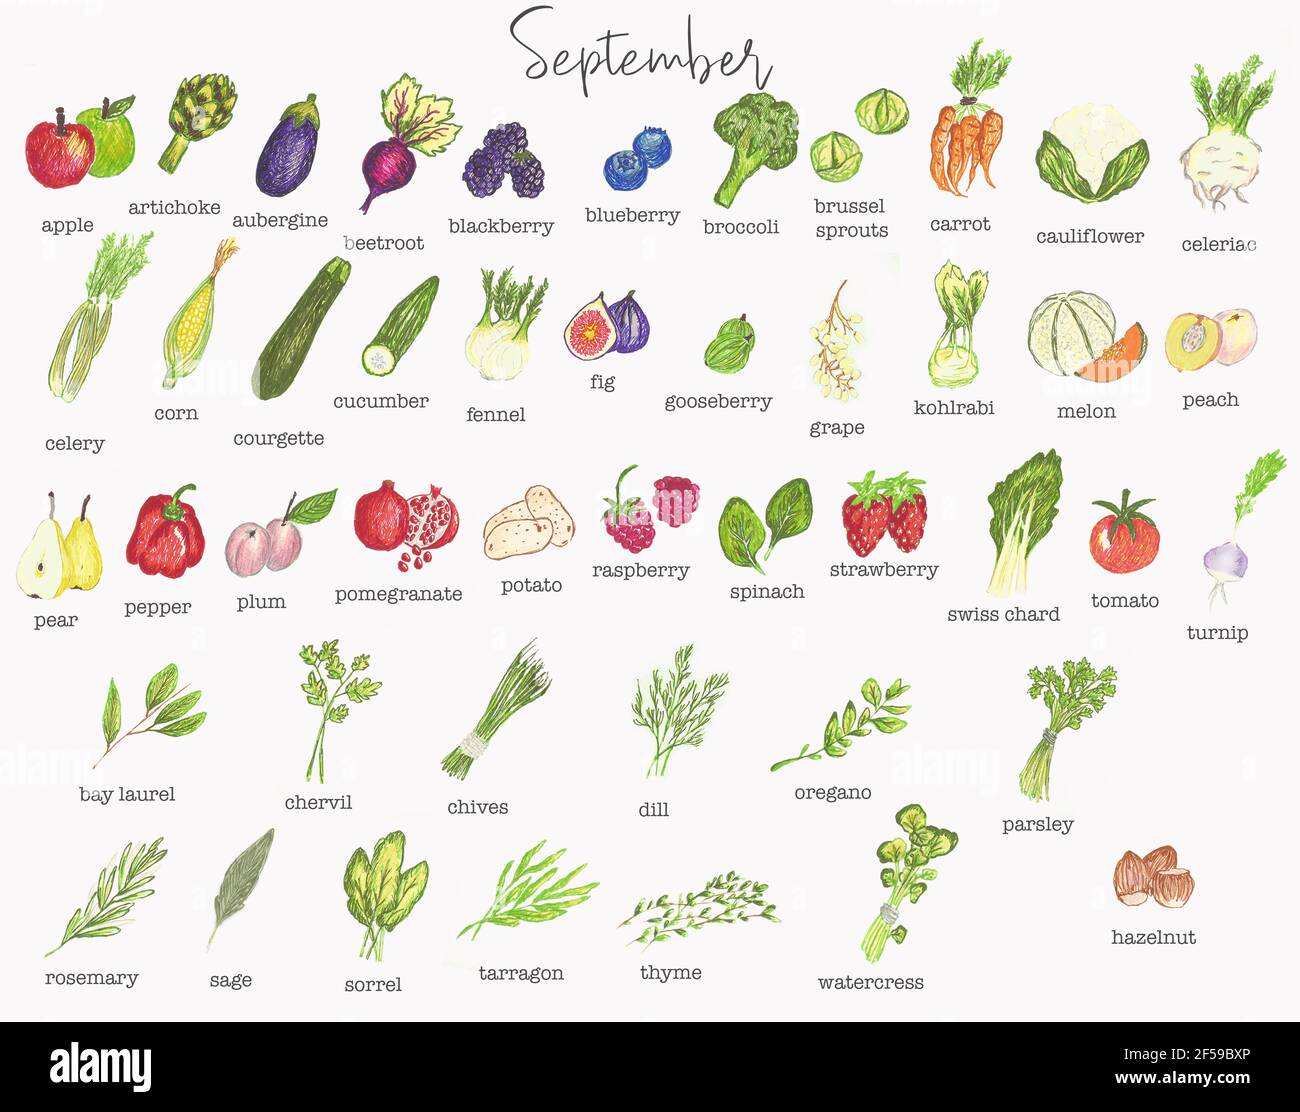 Calendrier saisonnier des fruits et légumes de septembre Photo Stock - Alamy